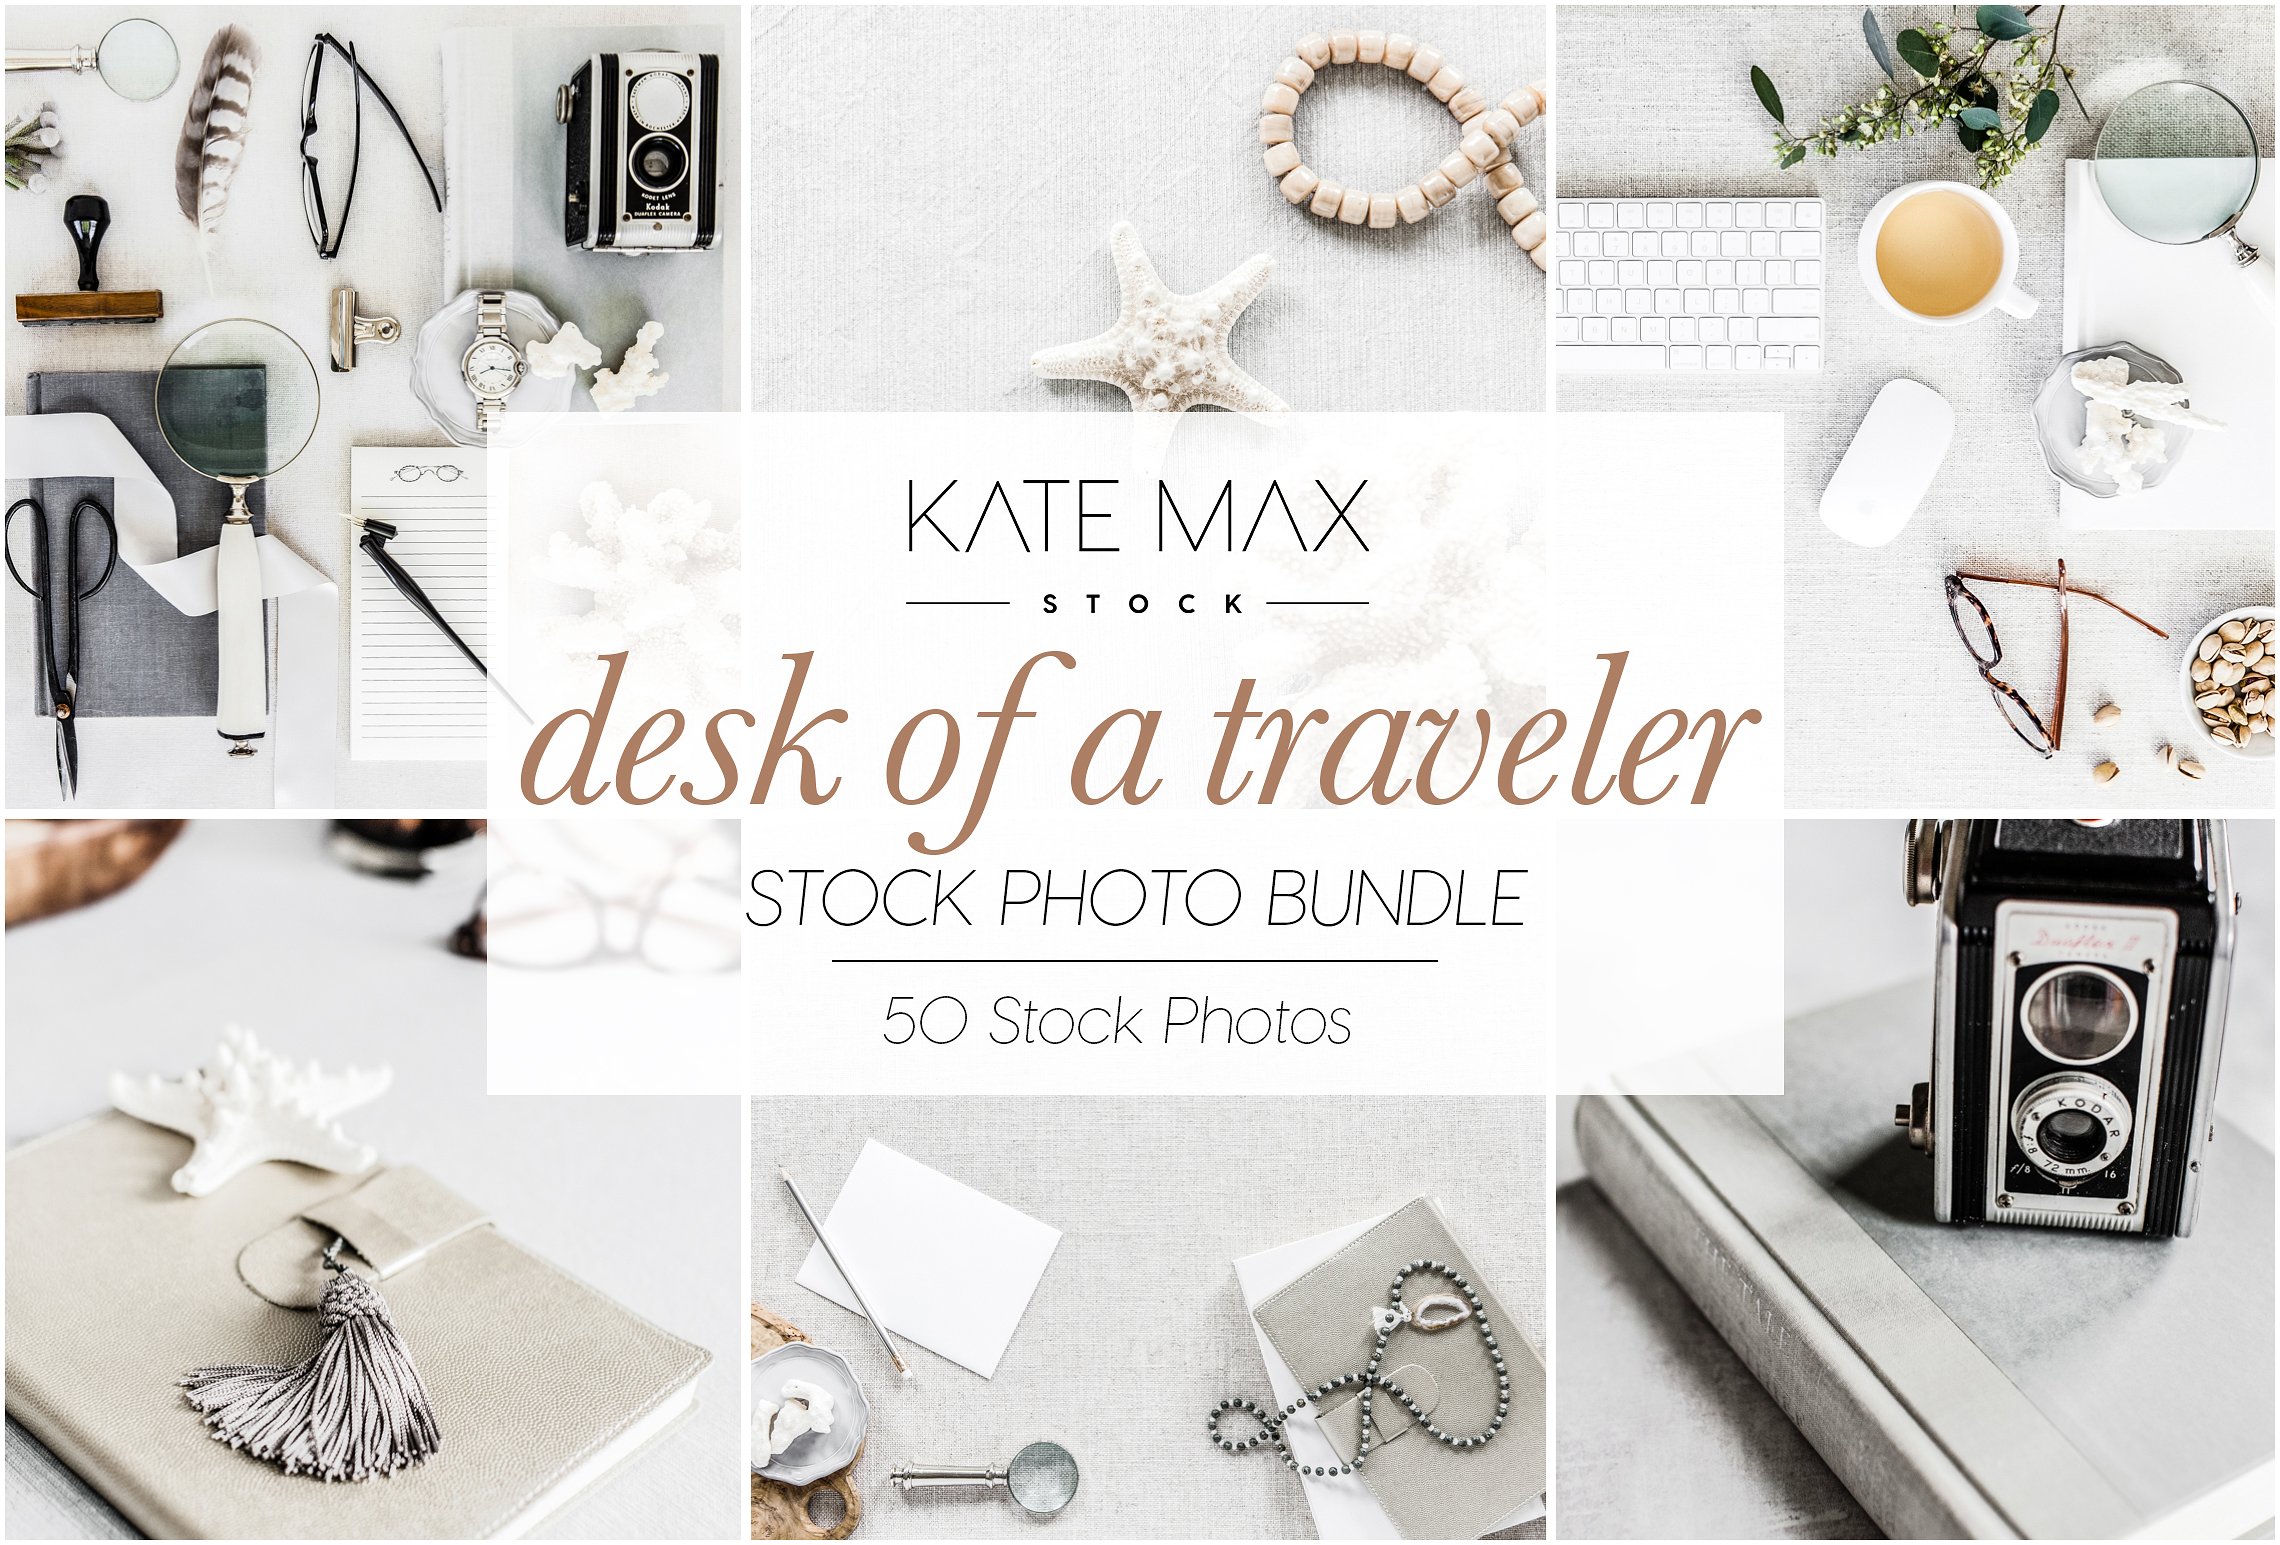 现代,干净和女性化品牌场景样机模板 Desk of a Traveler Stock Photo Bundl插图